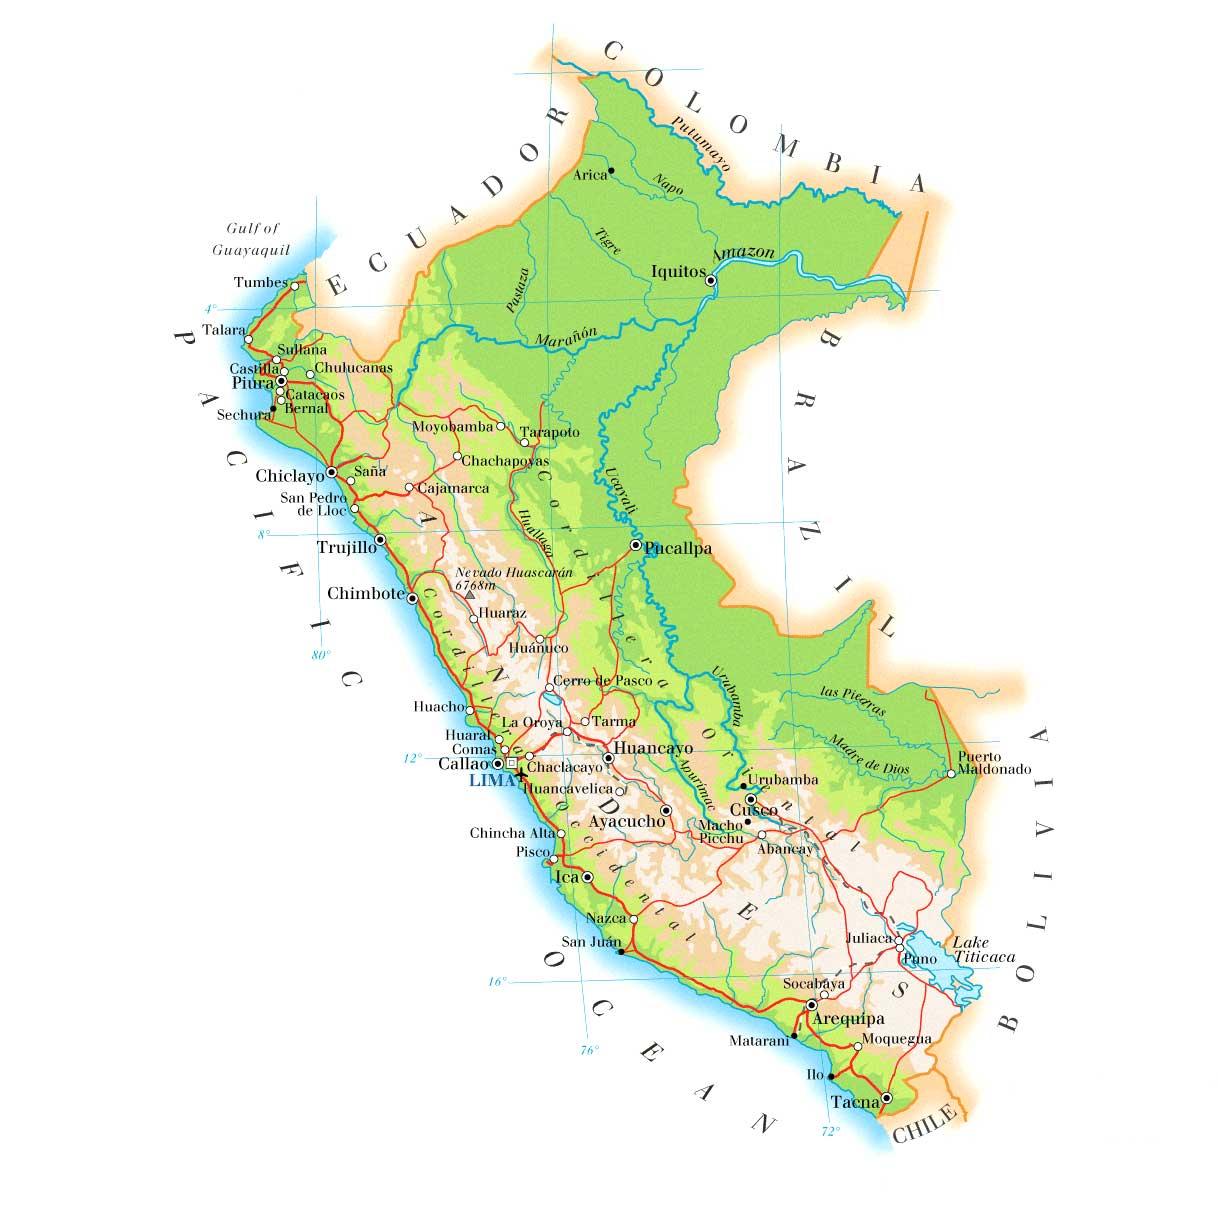 Mapa do Peru